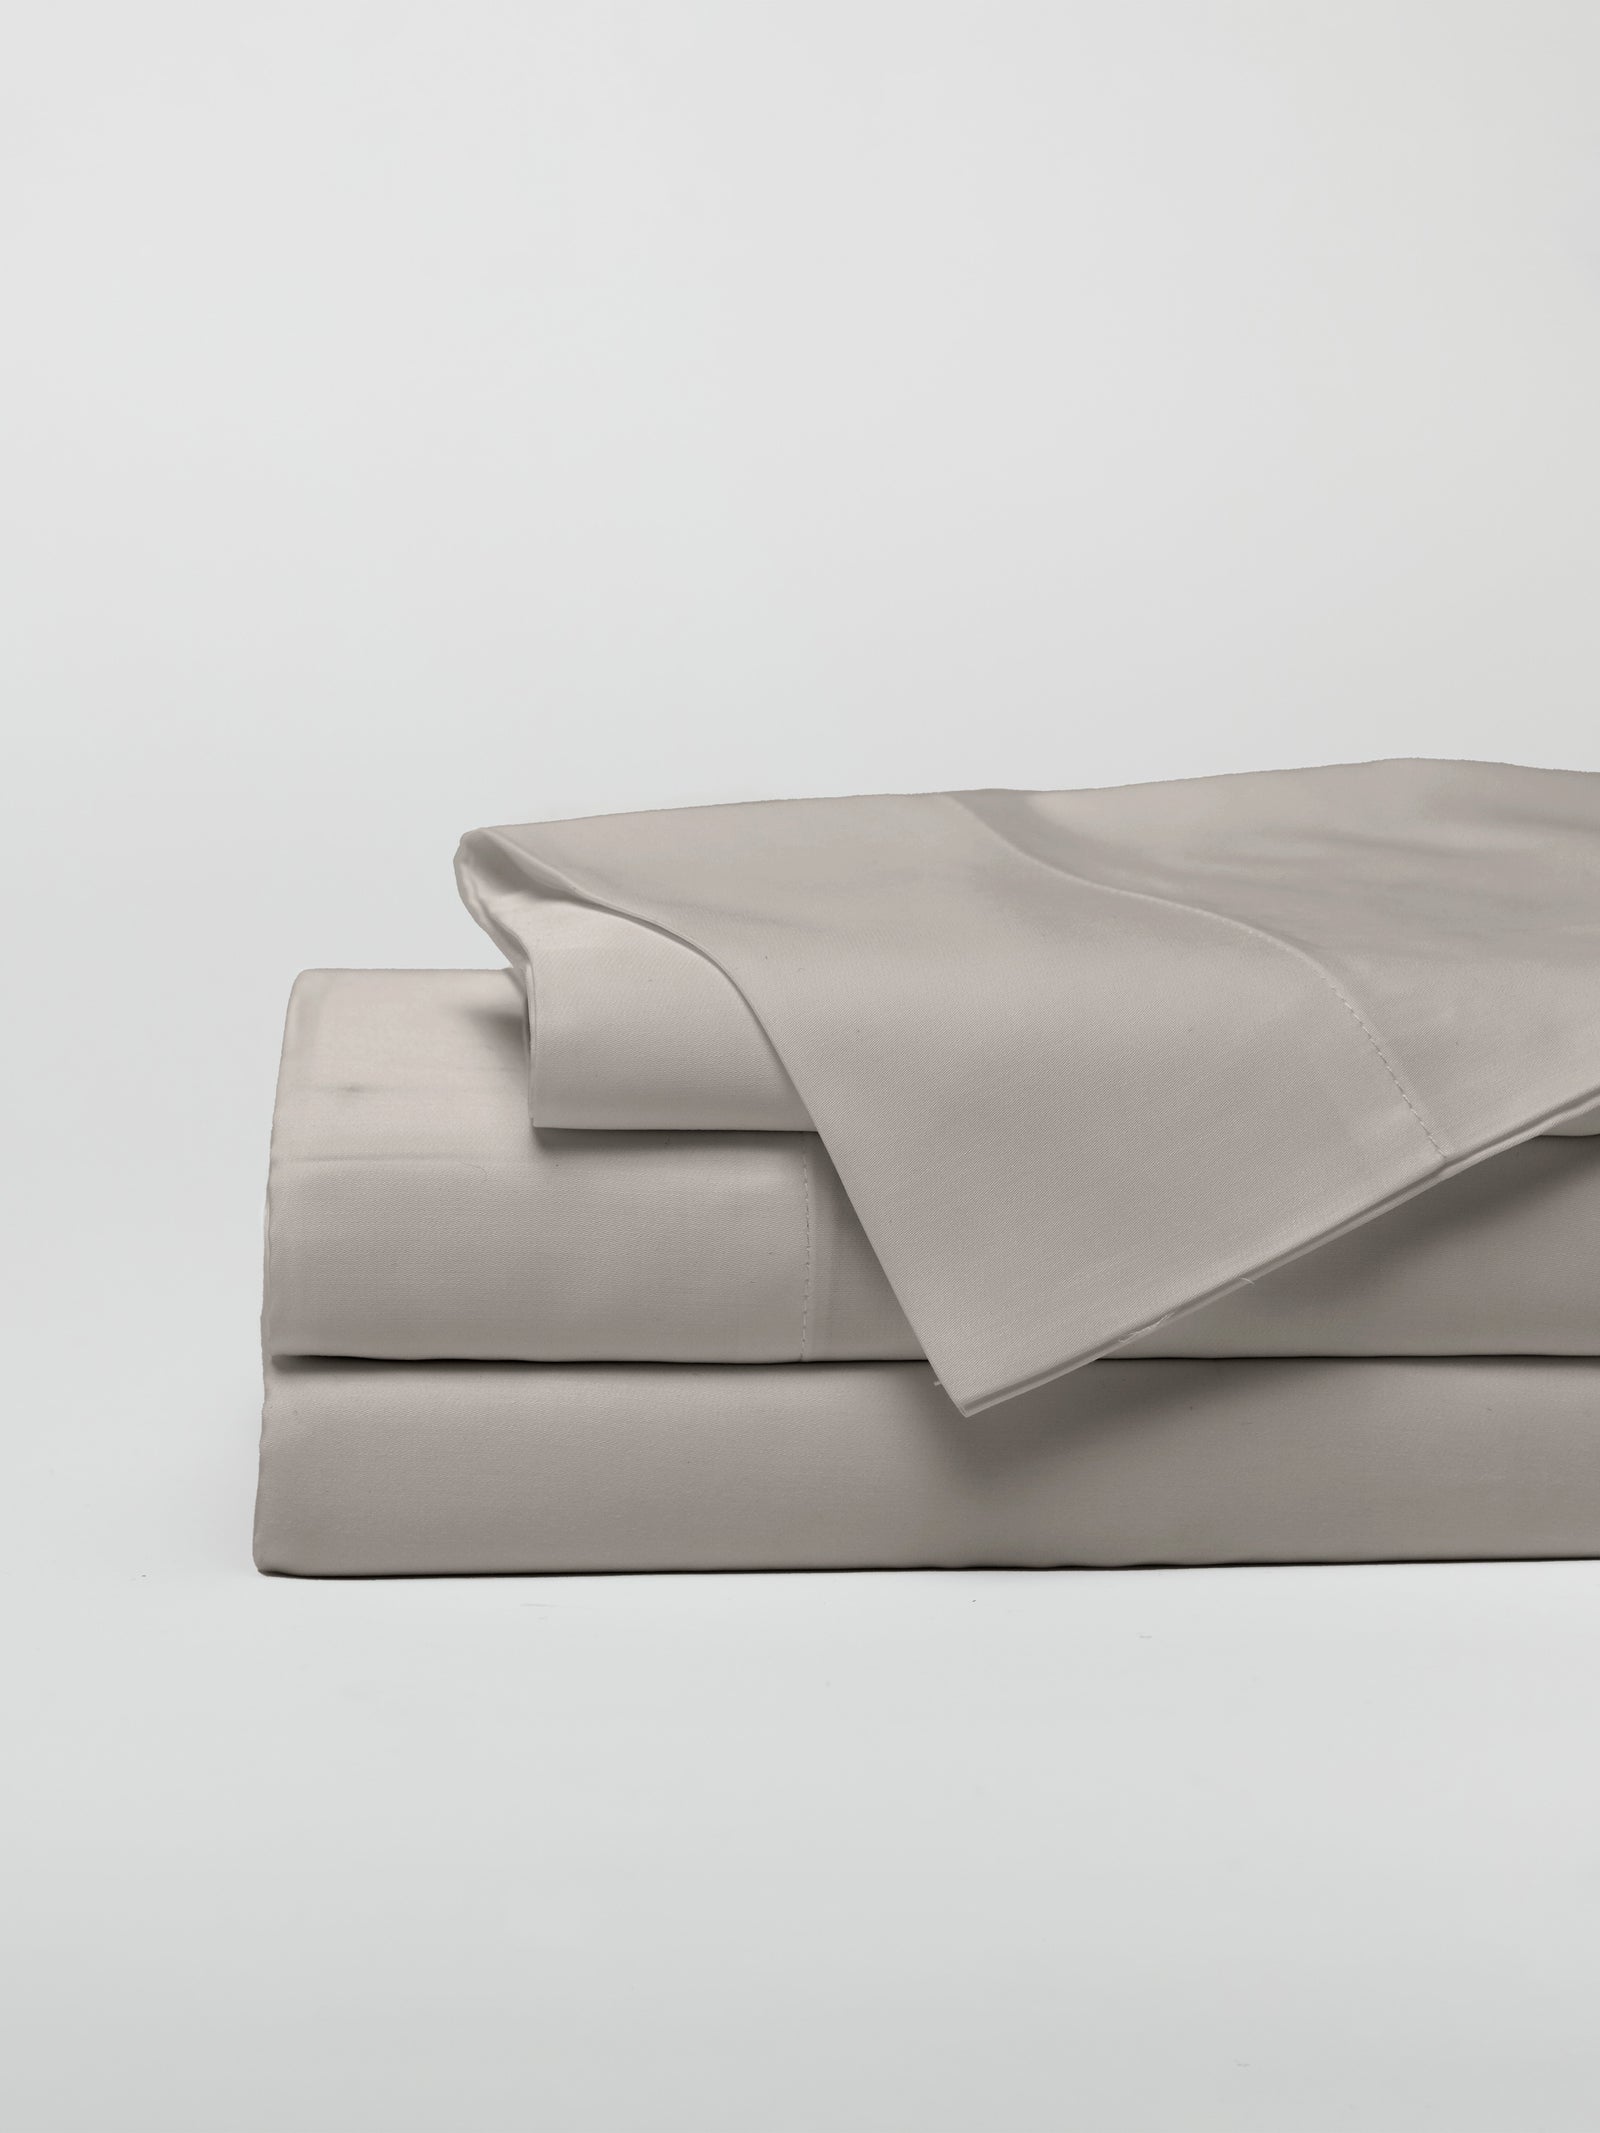 Dove Grey sheet set folded up with white background 